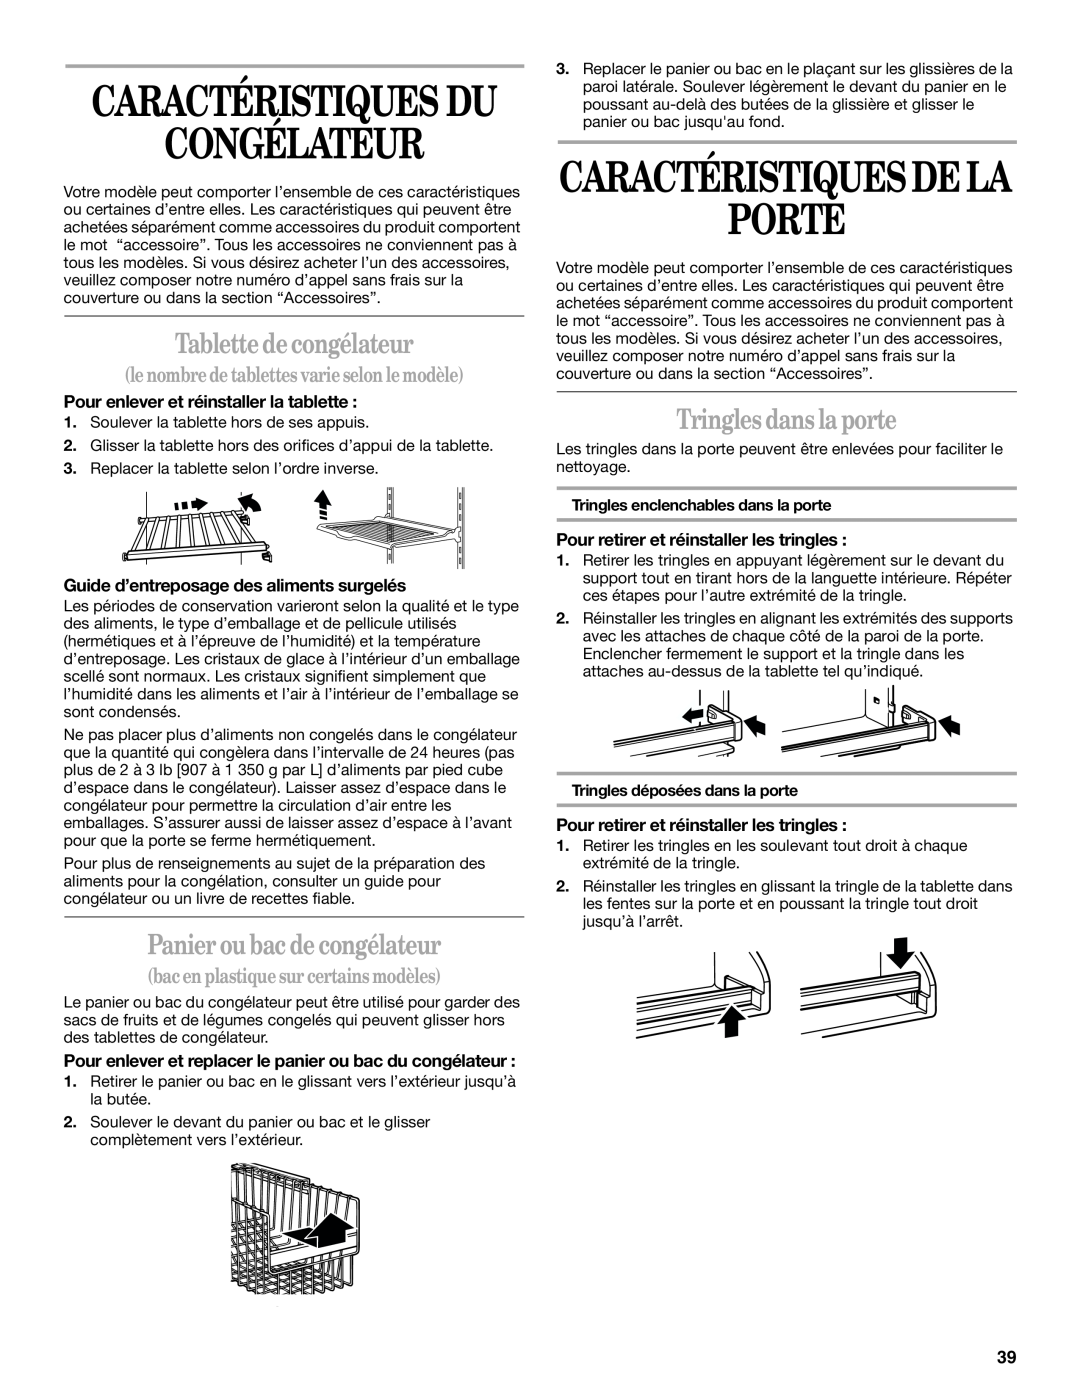 Whirlpool GT1SHTXMB02 manual Congélateur, Porte, Caractéristiques Du, Caractéristiques De La, Tablette de congélateur 